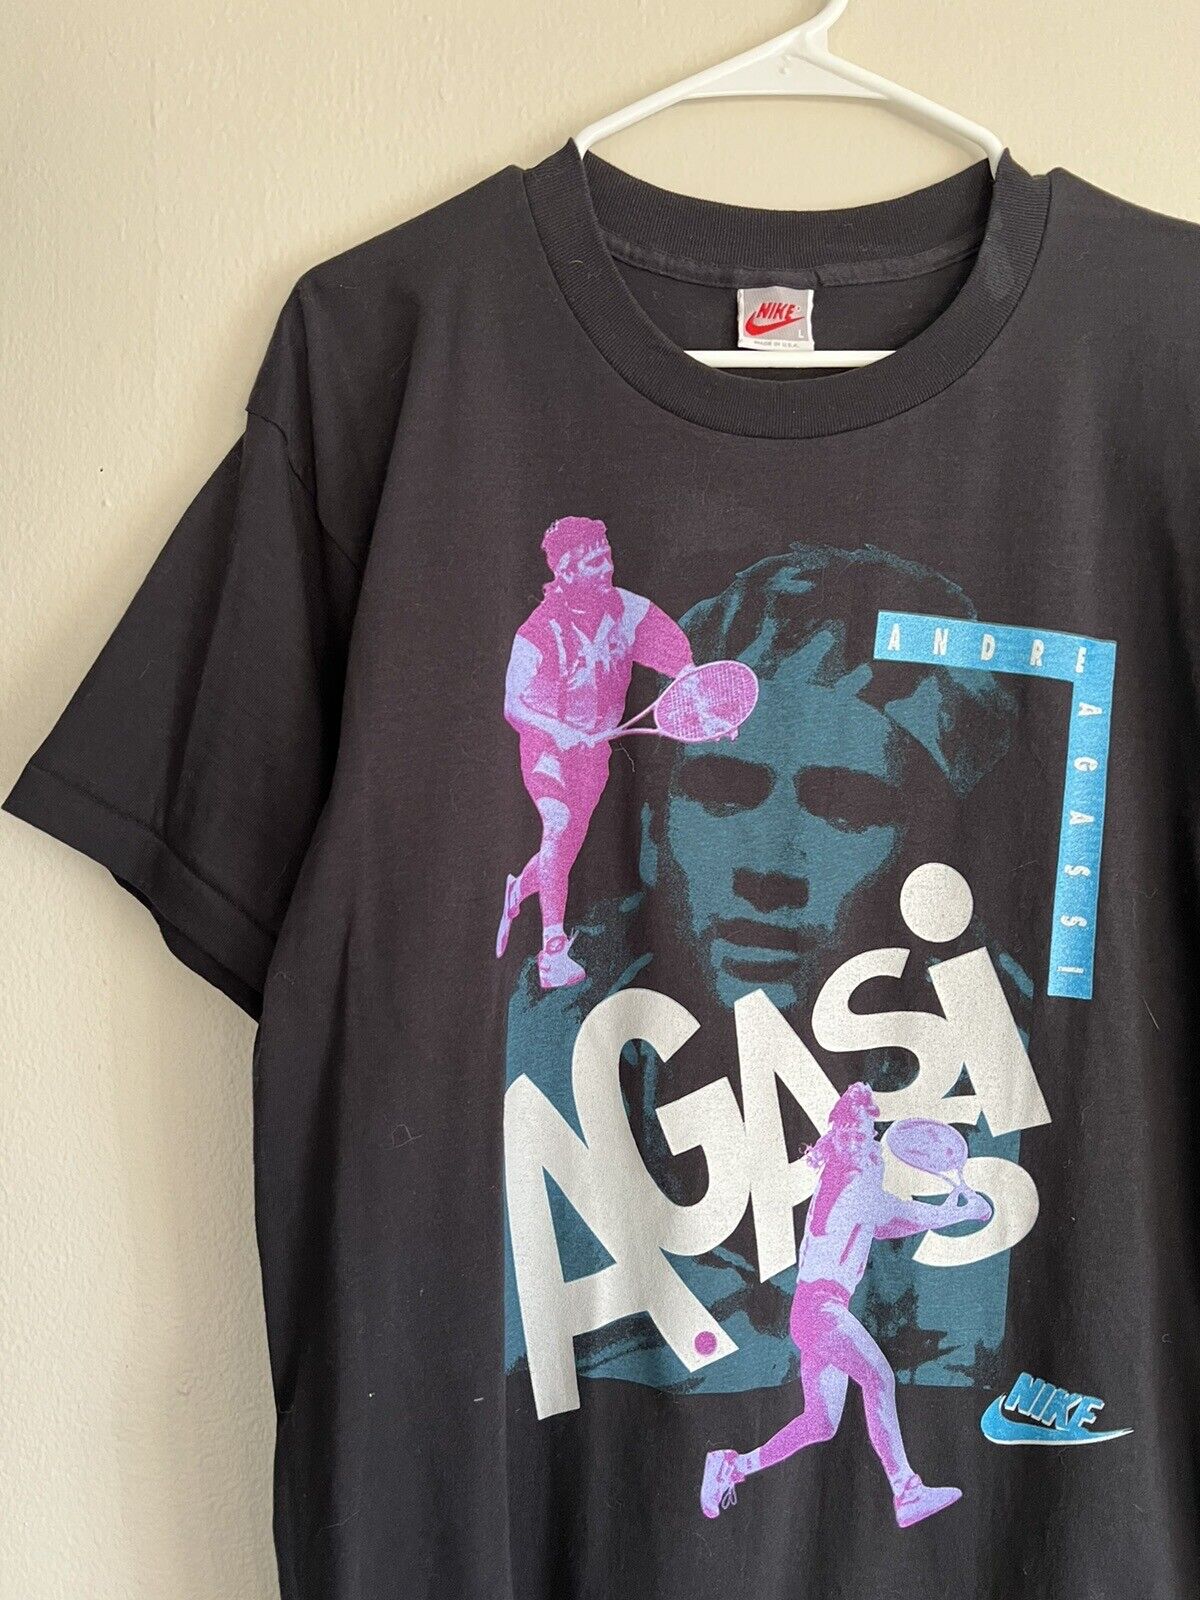 Vintage Nike Andre Agassi shirt Black XL - image 2